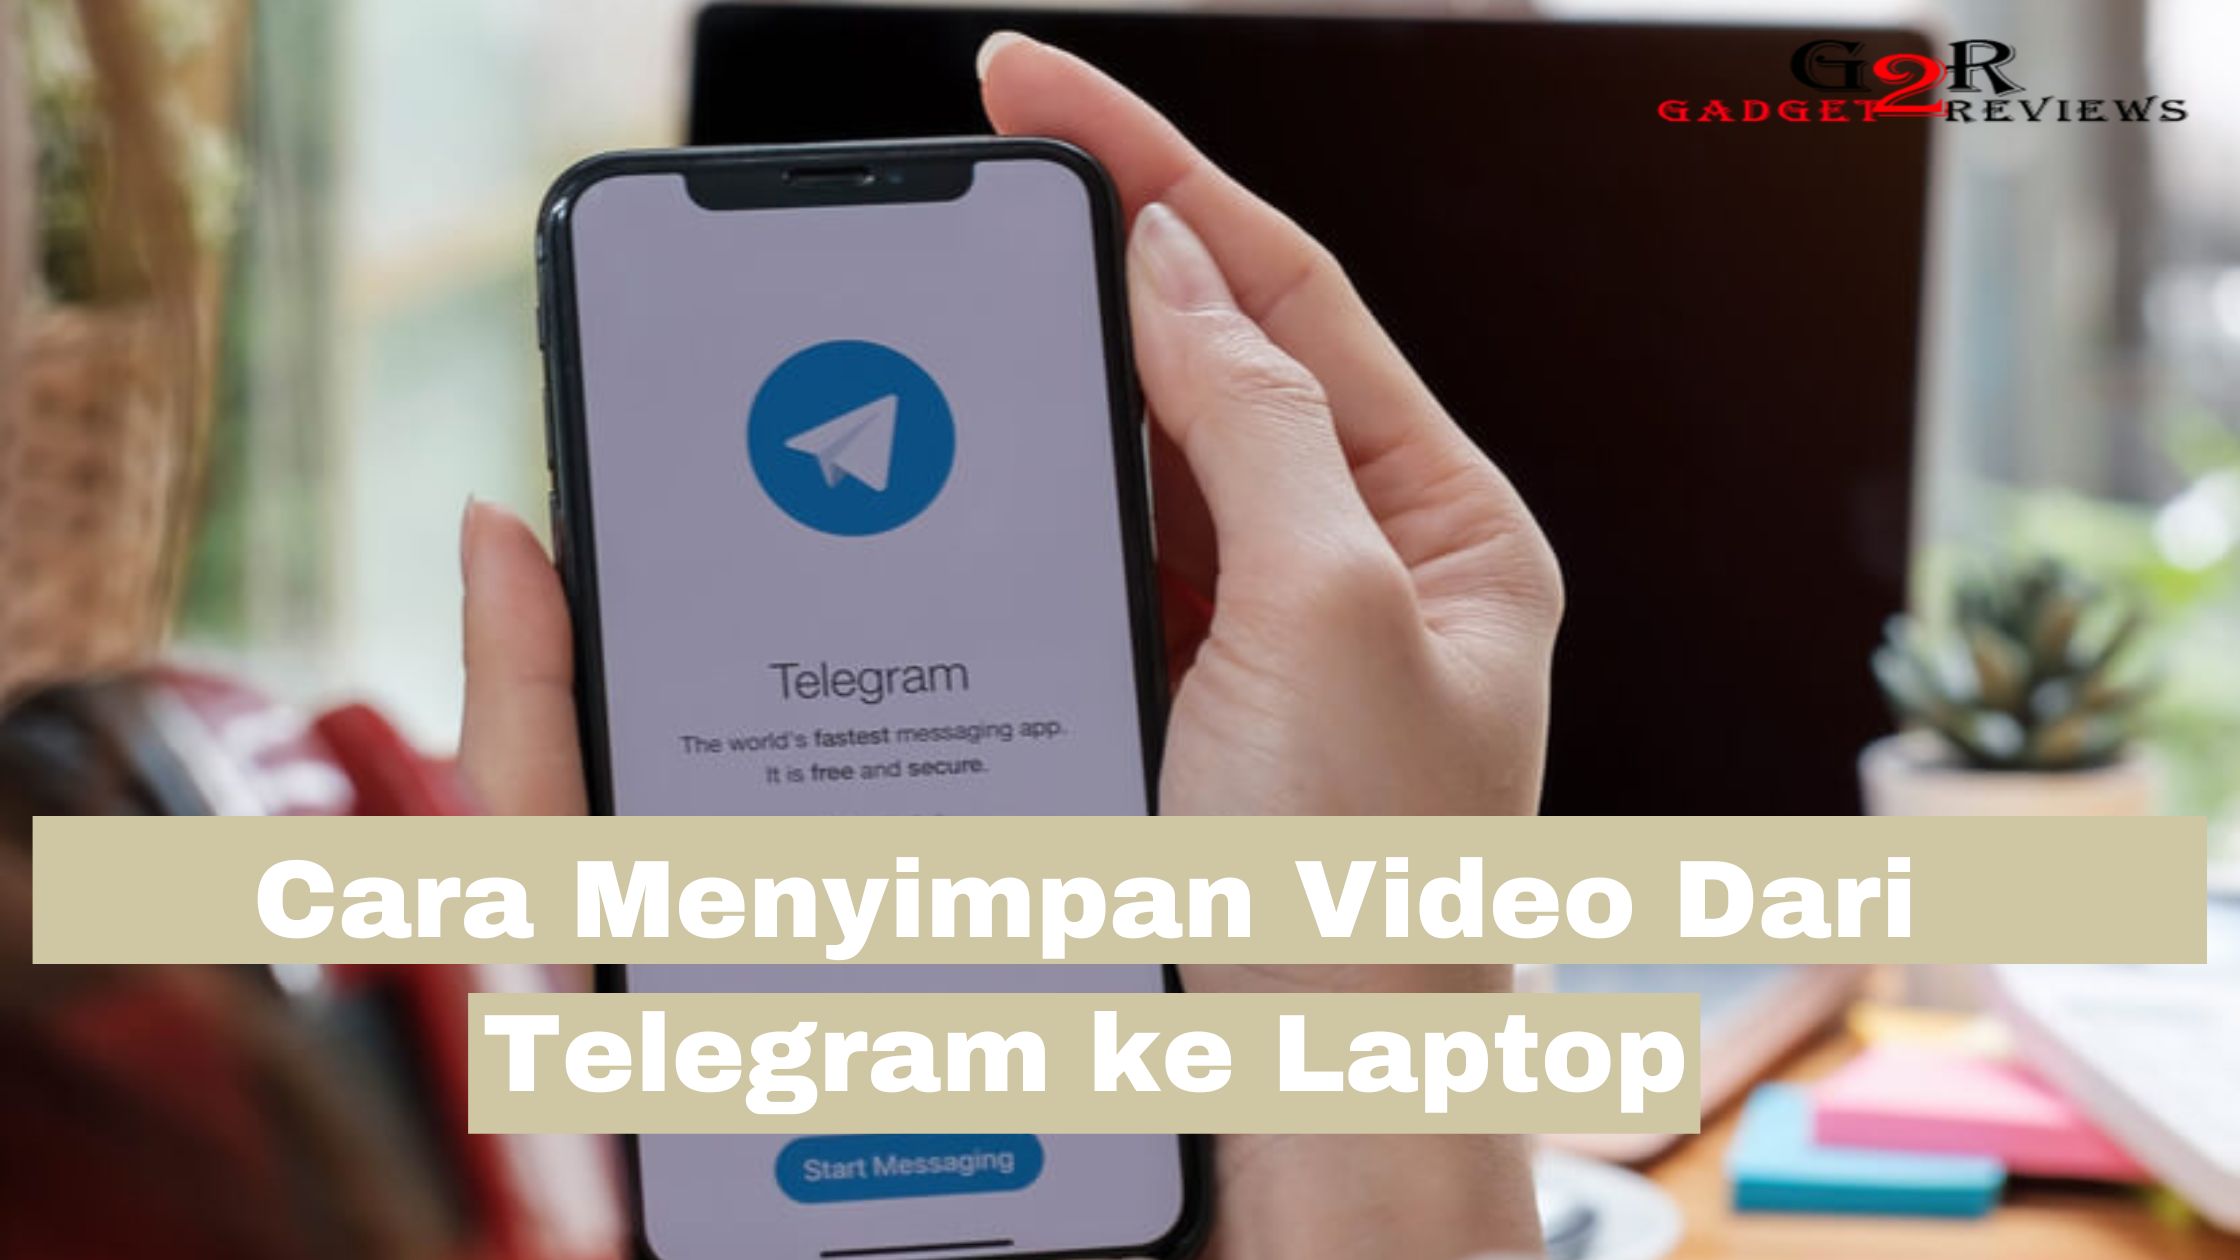 Cara Menyimpan Video Dari Telegram ke Laptop dan Galeri 